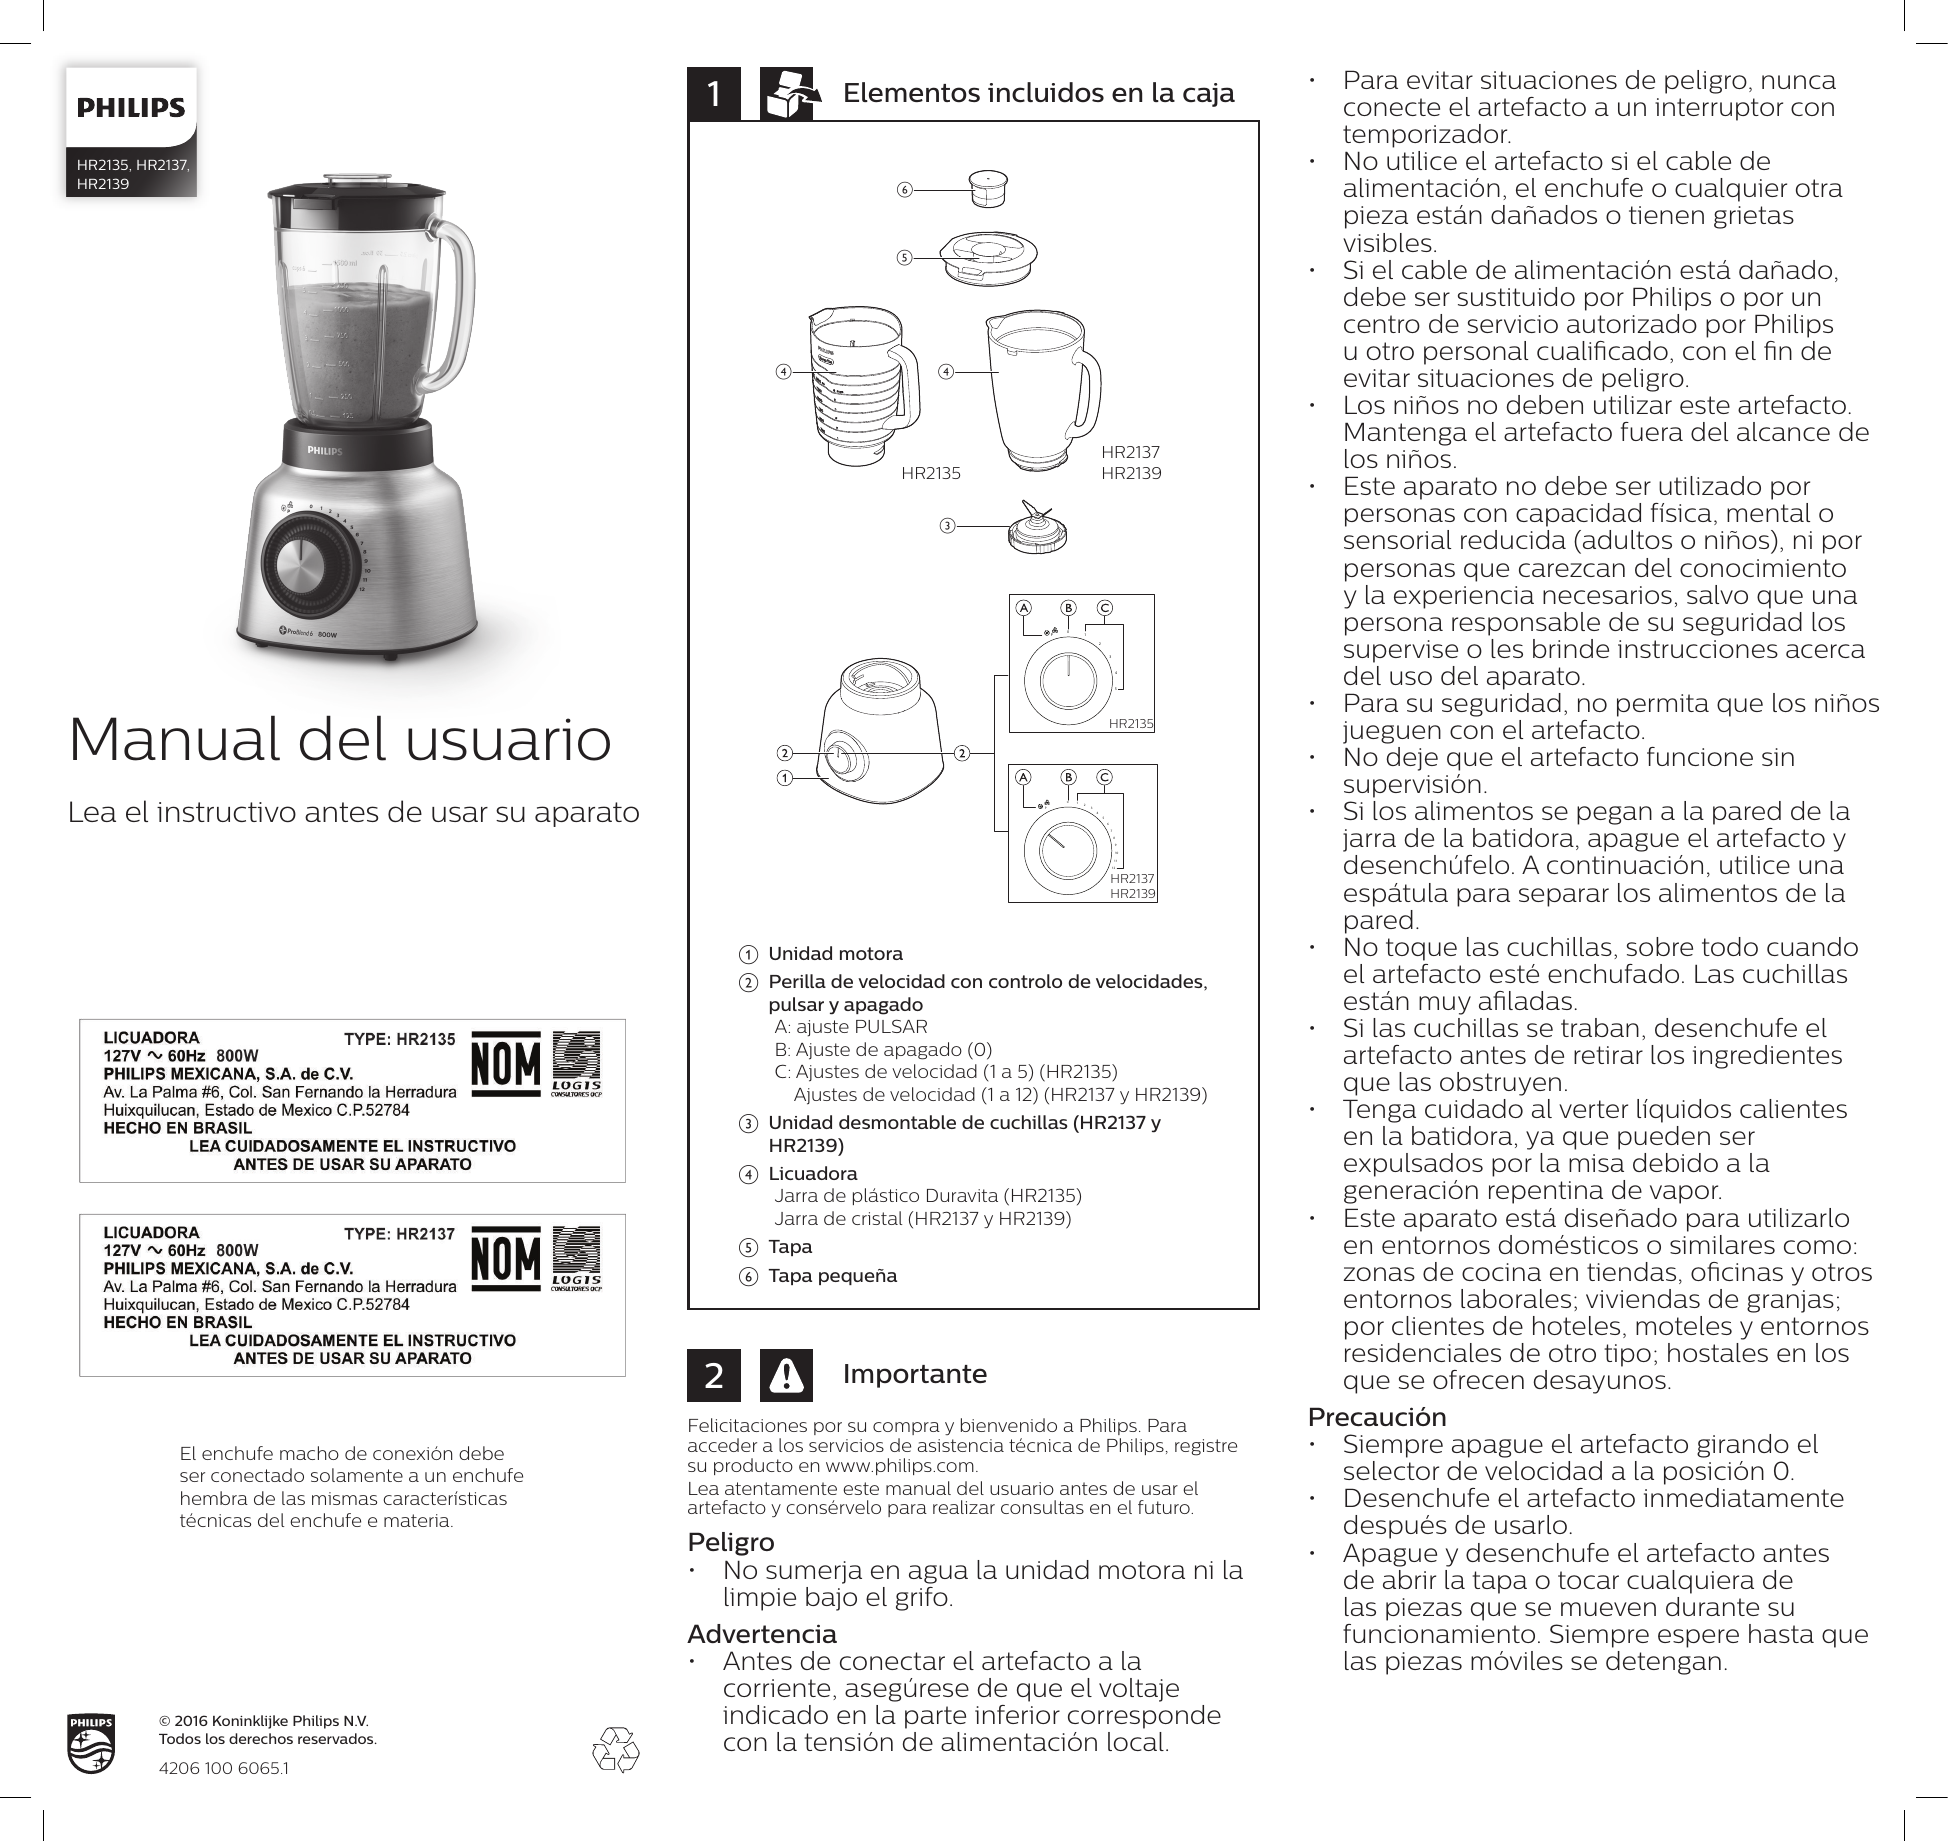 Manual de usuario de la licuadora PHILIPS HR2191 Serie 3000